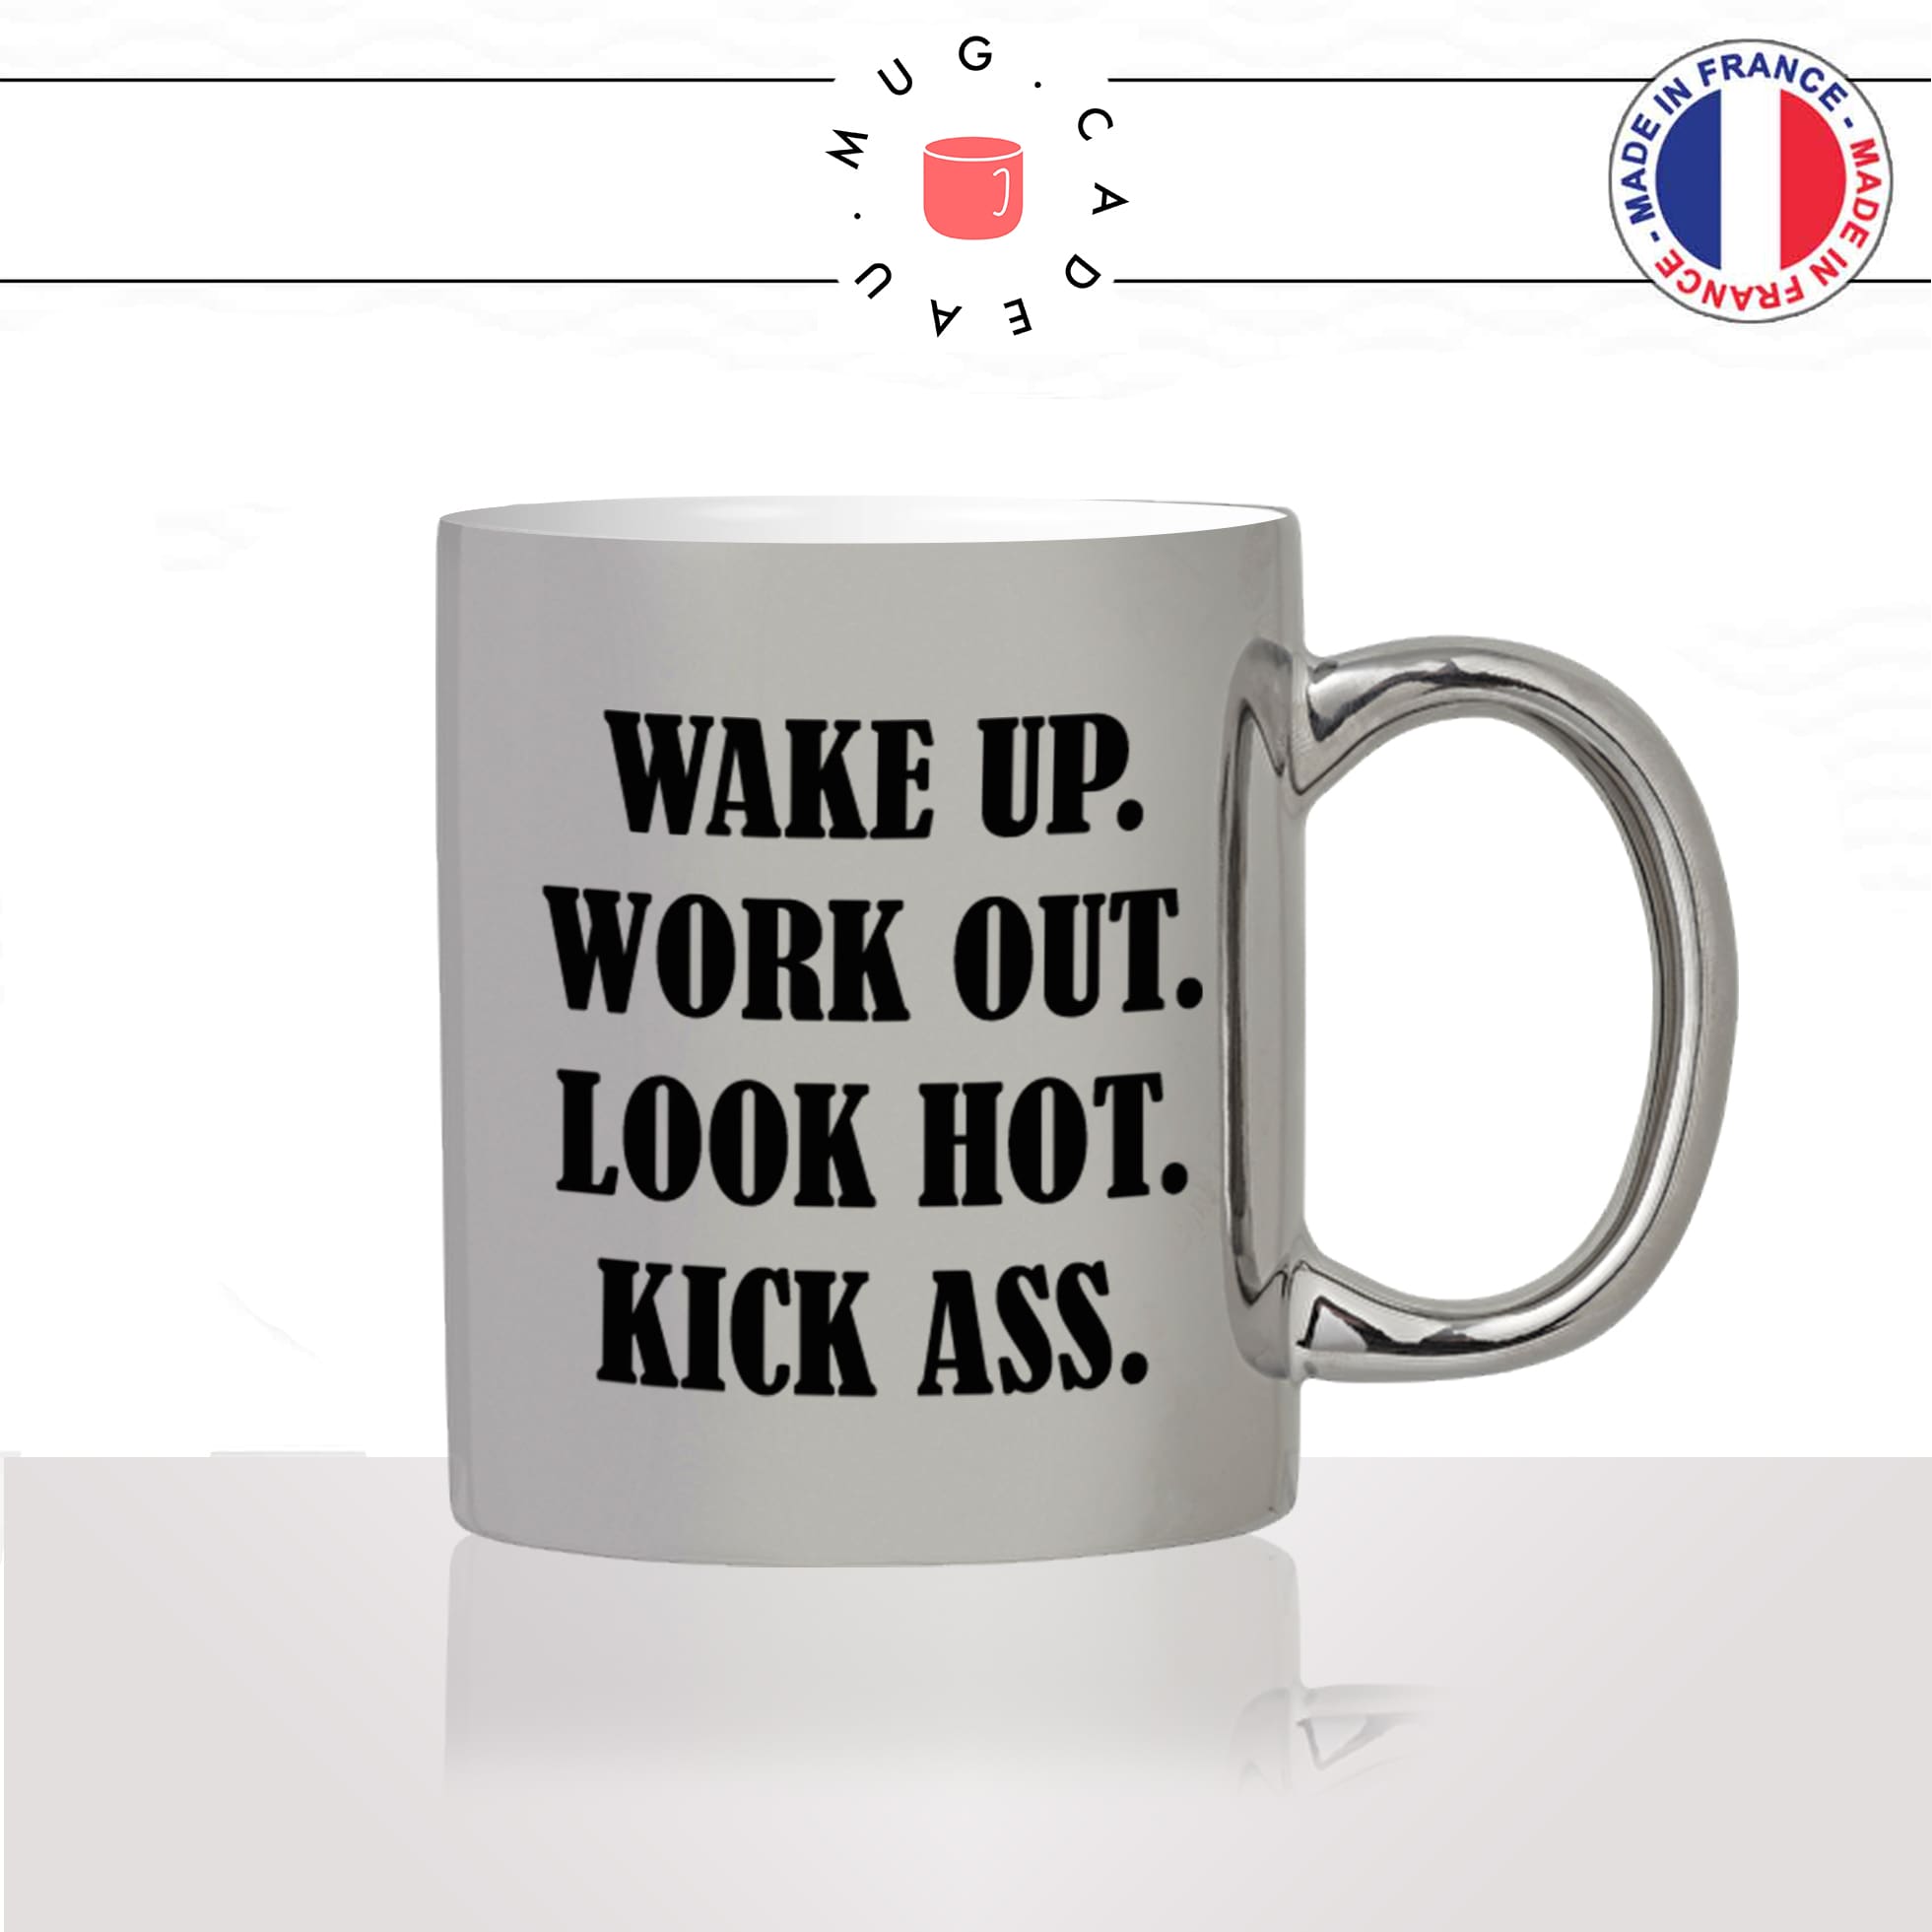 mug-tasse-argent-argenté-silver-wake-up-kick-ass-fitness-musculation-sport-collegue-motivation-humour-idée-cadeau-fun-cool-café-thé-original2-min